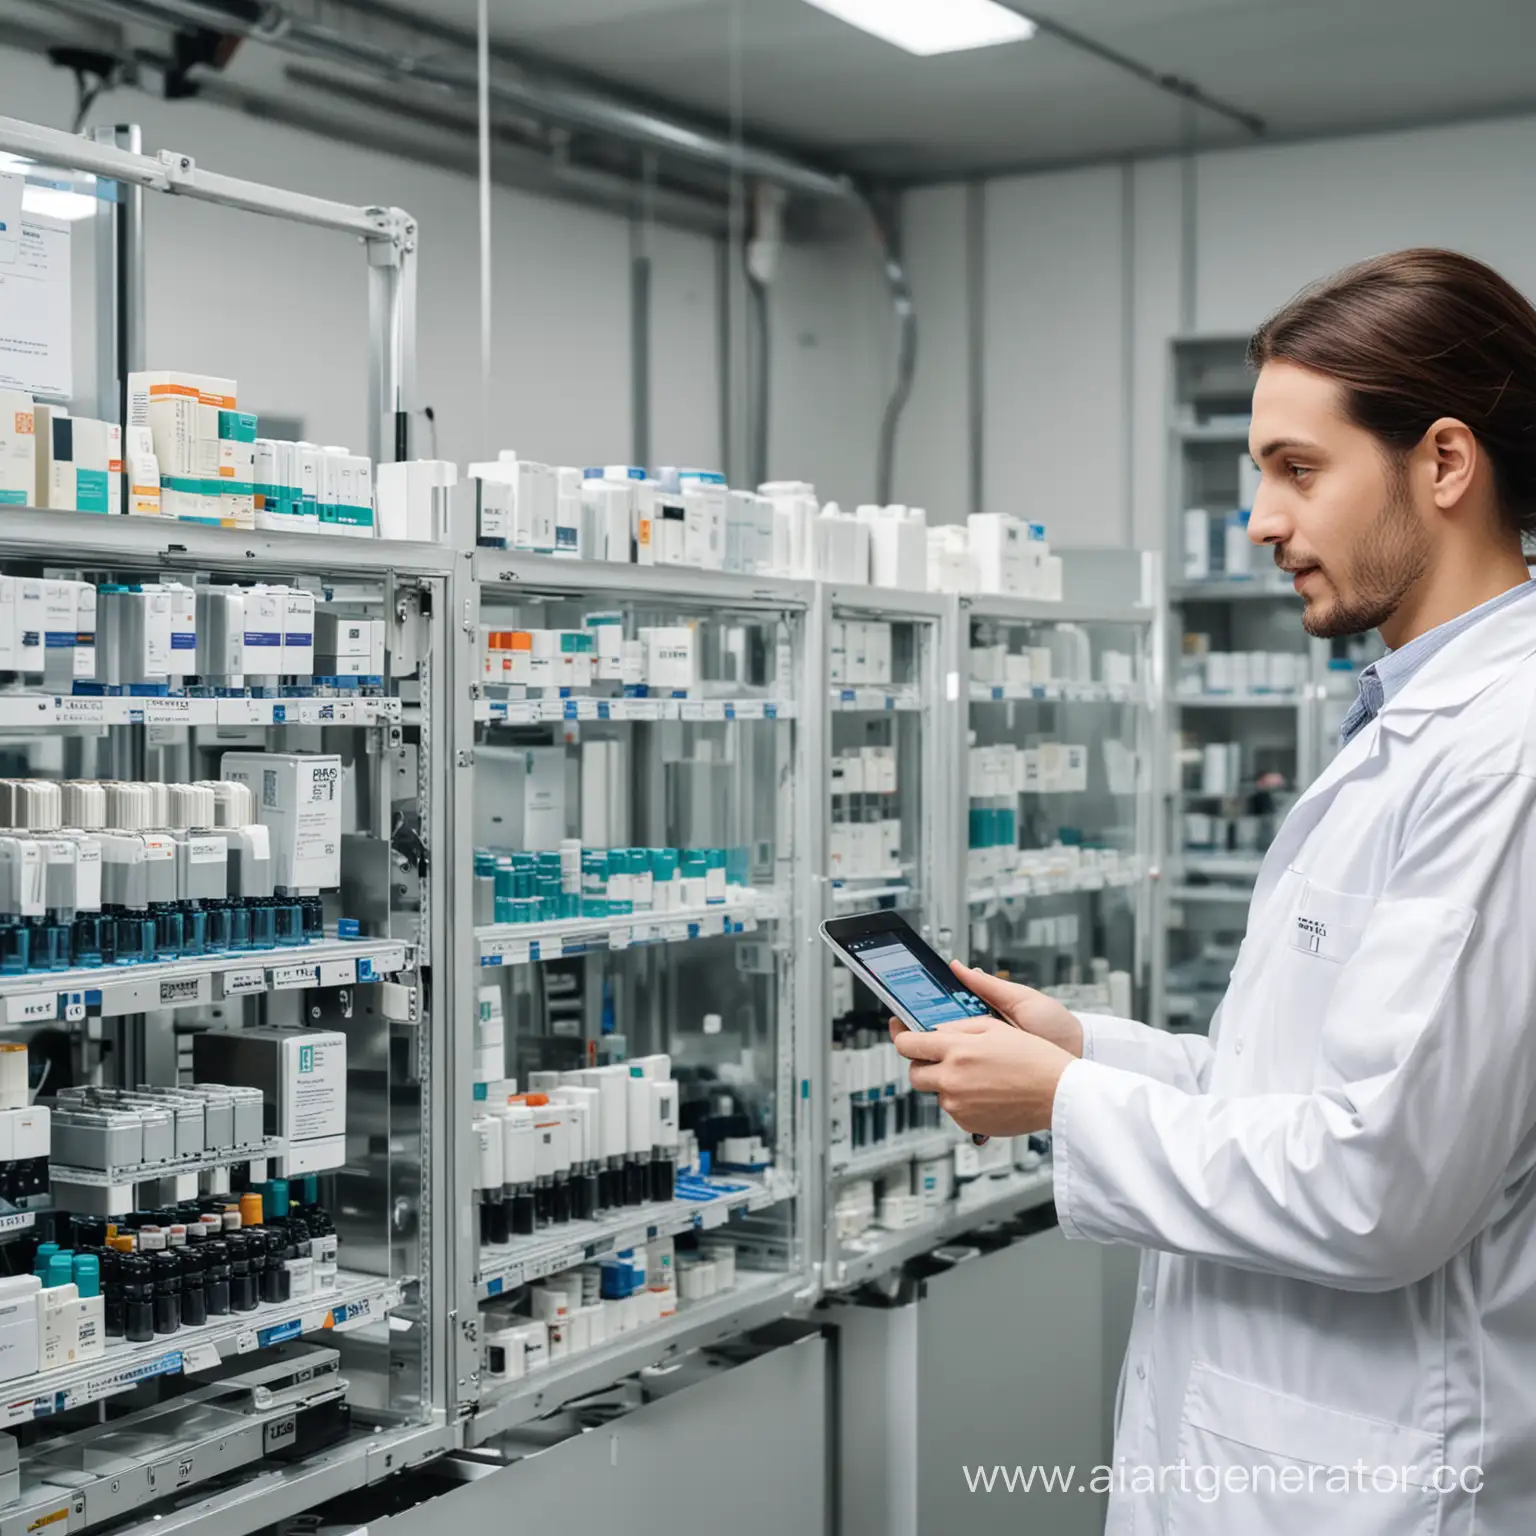 автоматизация управления качеством при производстве лекарственных средств при помощи искусственного интеллекта и датчиков интегрированных в RFID-метку